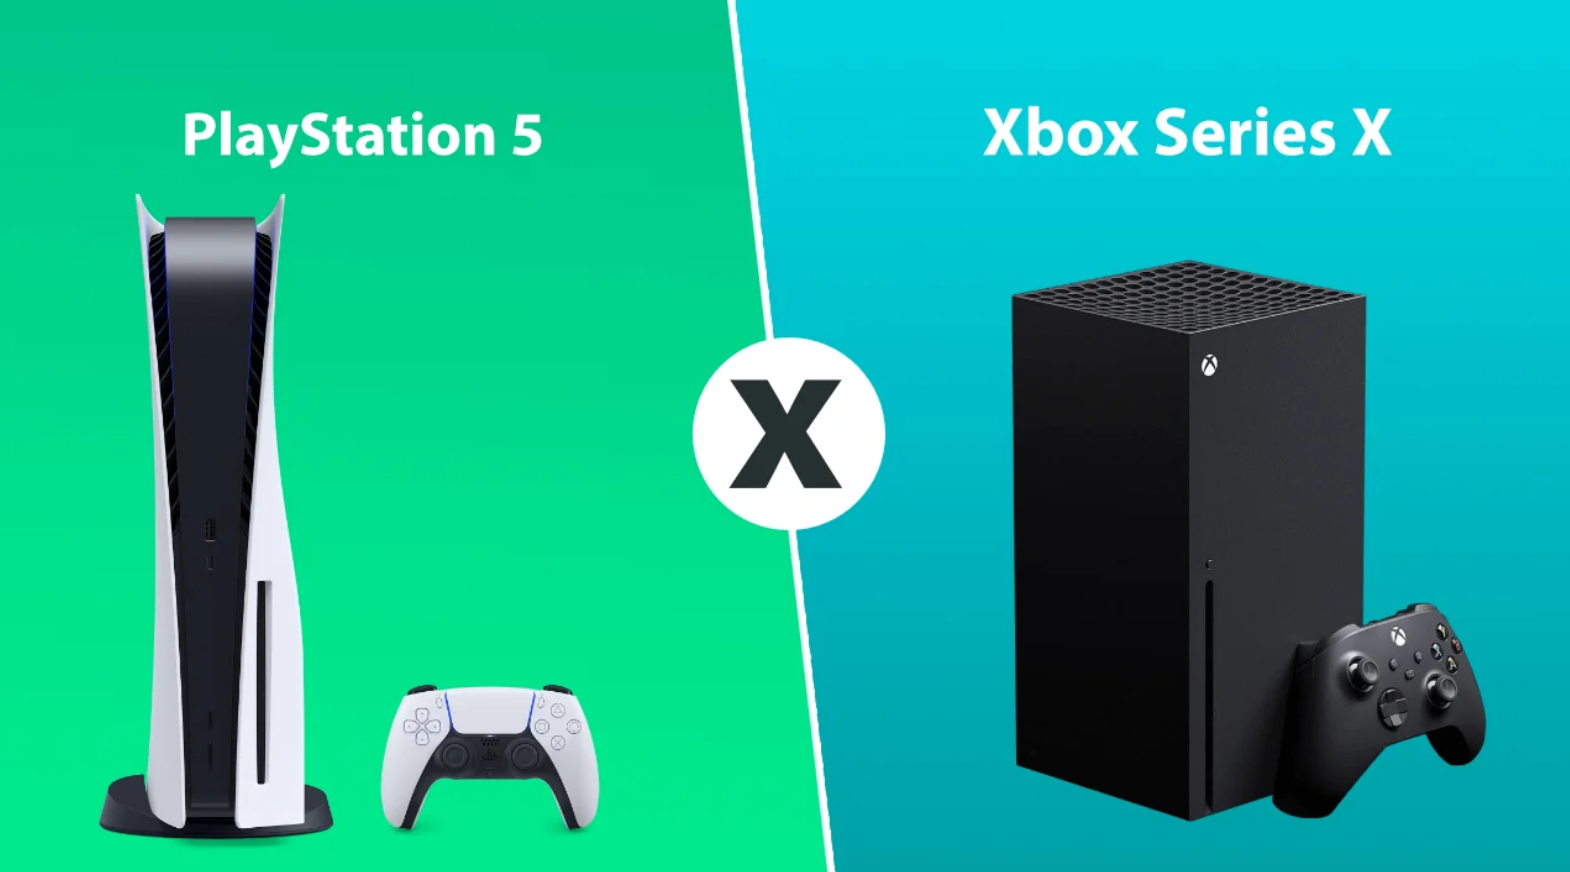 Xbox Series X: conheça o novo videogame da Microsoft, que chega em 2020